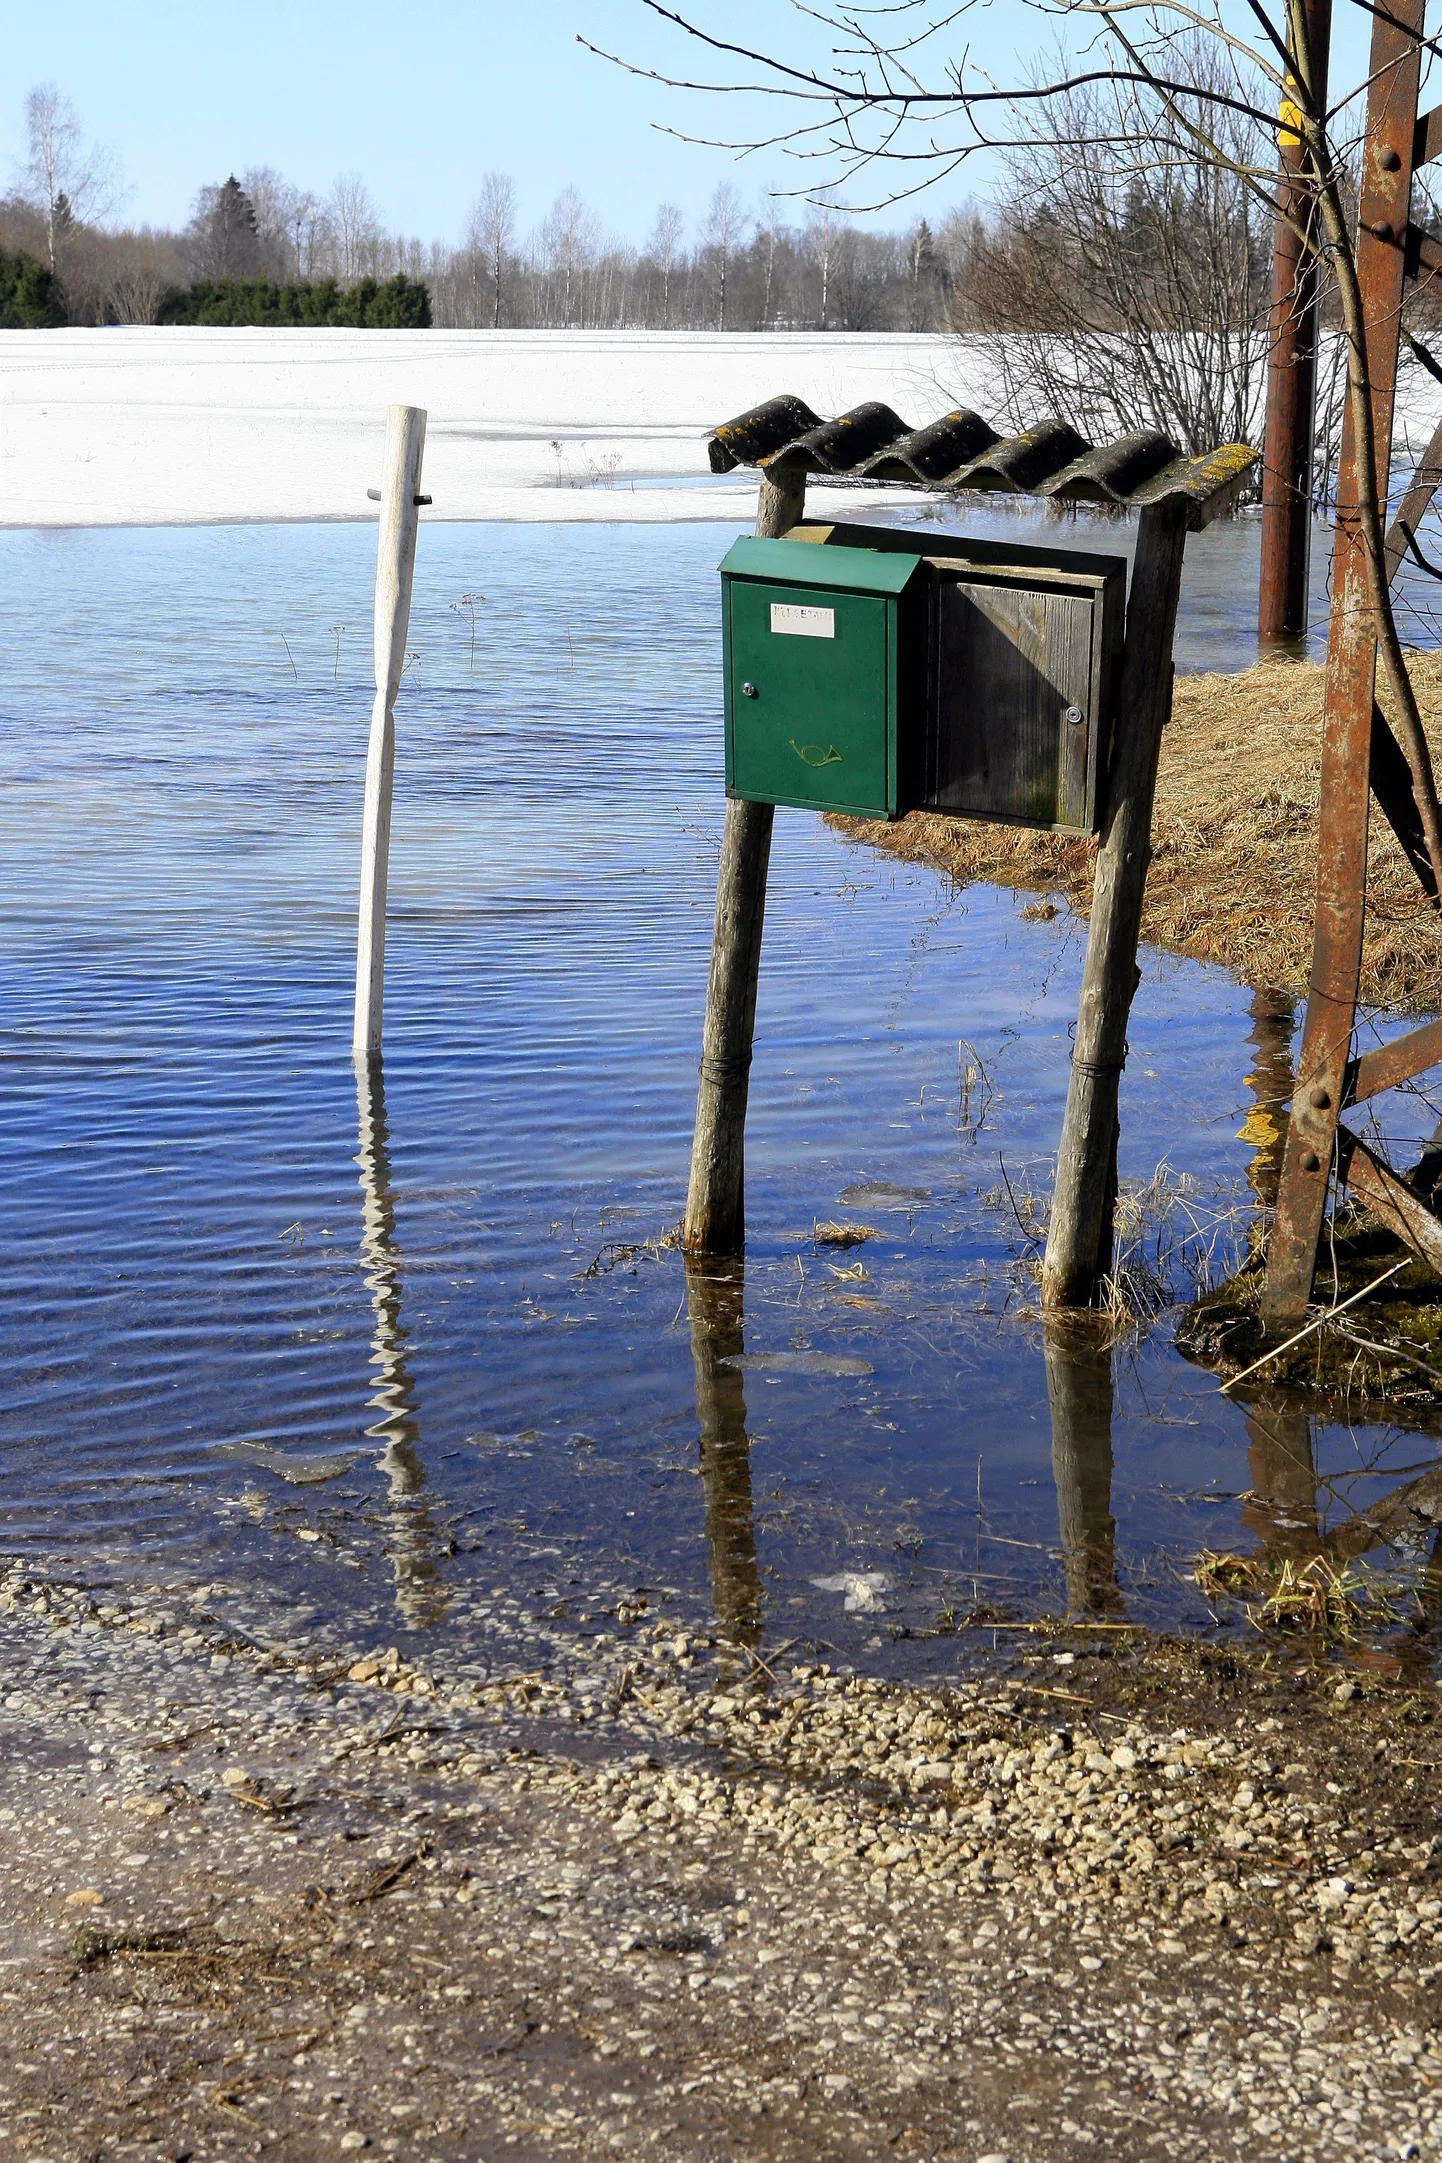 Mitmeis Eesti paigus on tulvavete tõttu postiteenuste osutamine häiritud.